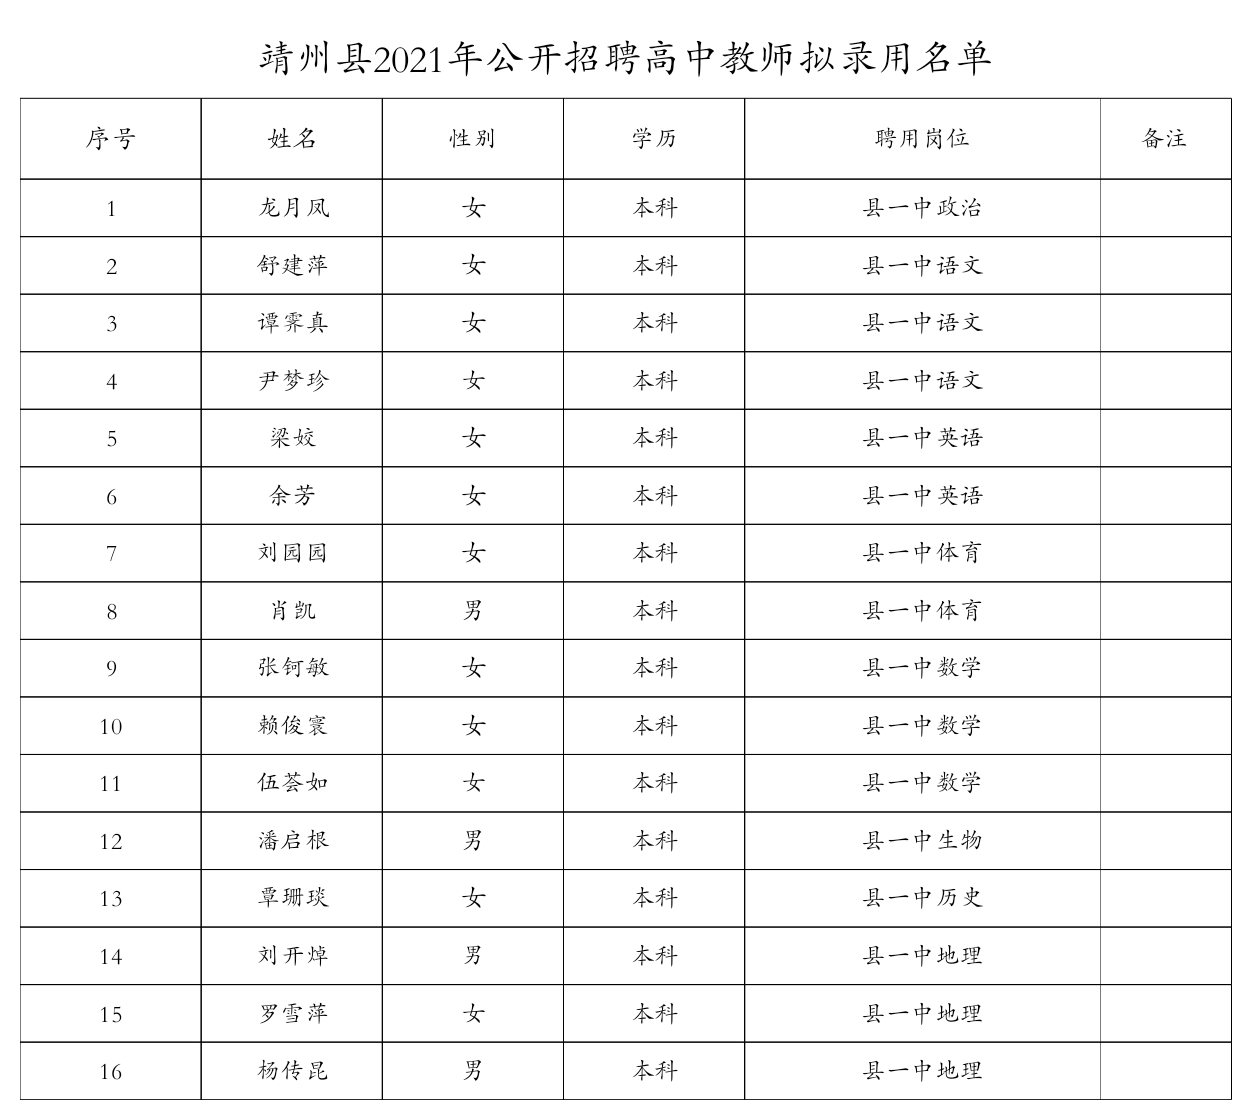 2021年靖州县公开招聘中小学及幼儿园员、高中教师拟录用公示(图2)